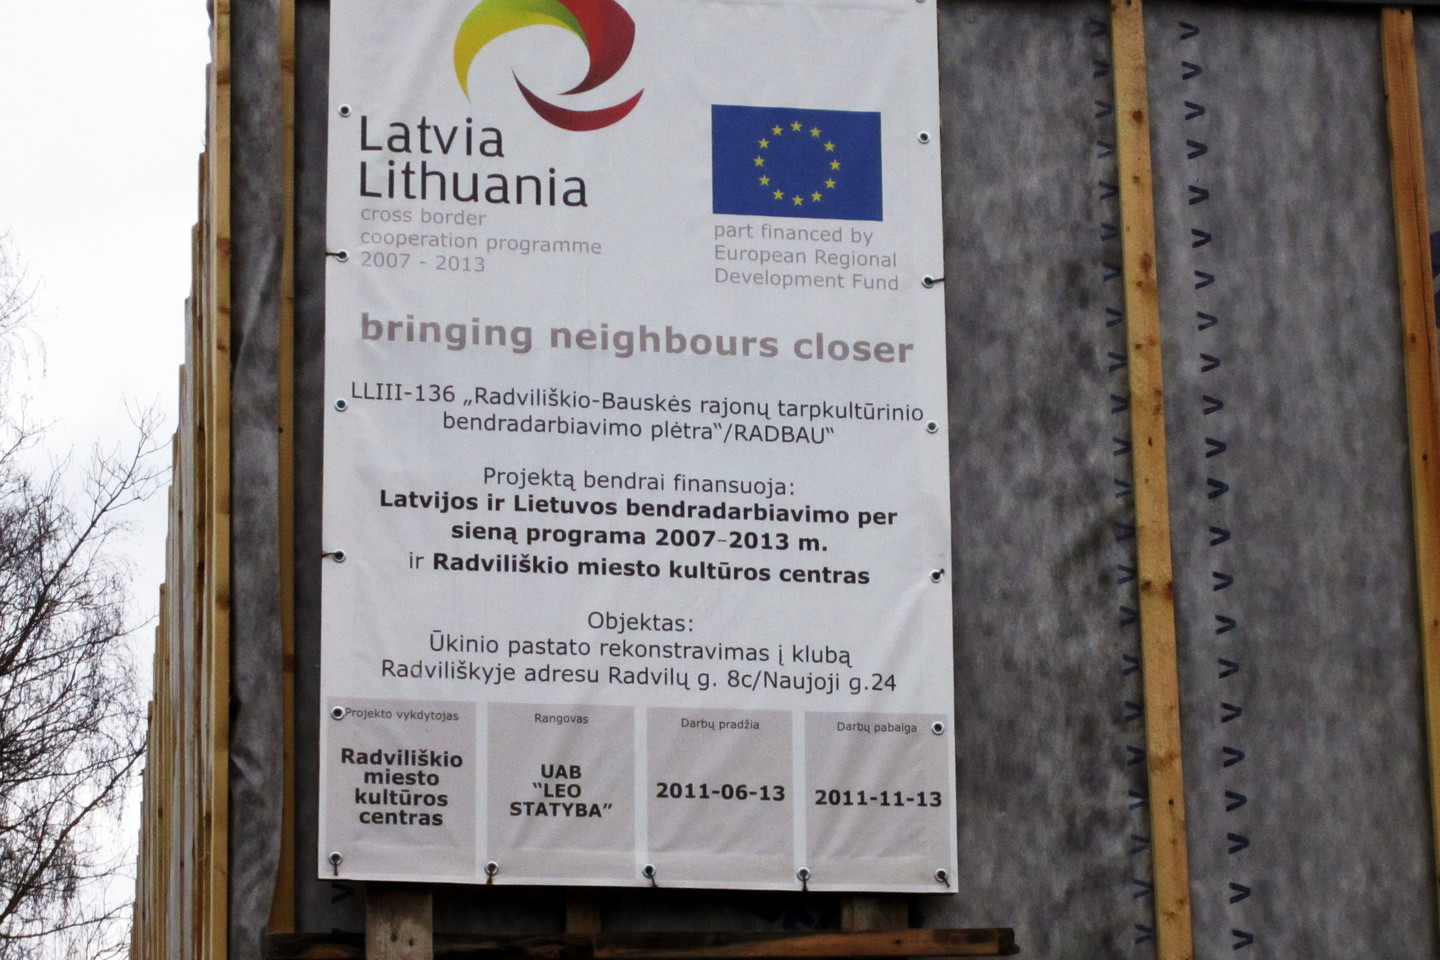  Įtariama, kad kuriant šį Latvių kultūros centrą Radviliškyje galėjo būti siekiama užvaldyti Europos Sąjungos ir Radviliškio rajono savivaldybės biudžeto lėšas, iš viso 369 tūkstančius litų (106 tūkstančius 870 eurų). <br> R.Vitkaus nuotr.